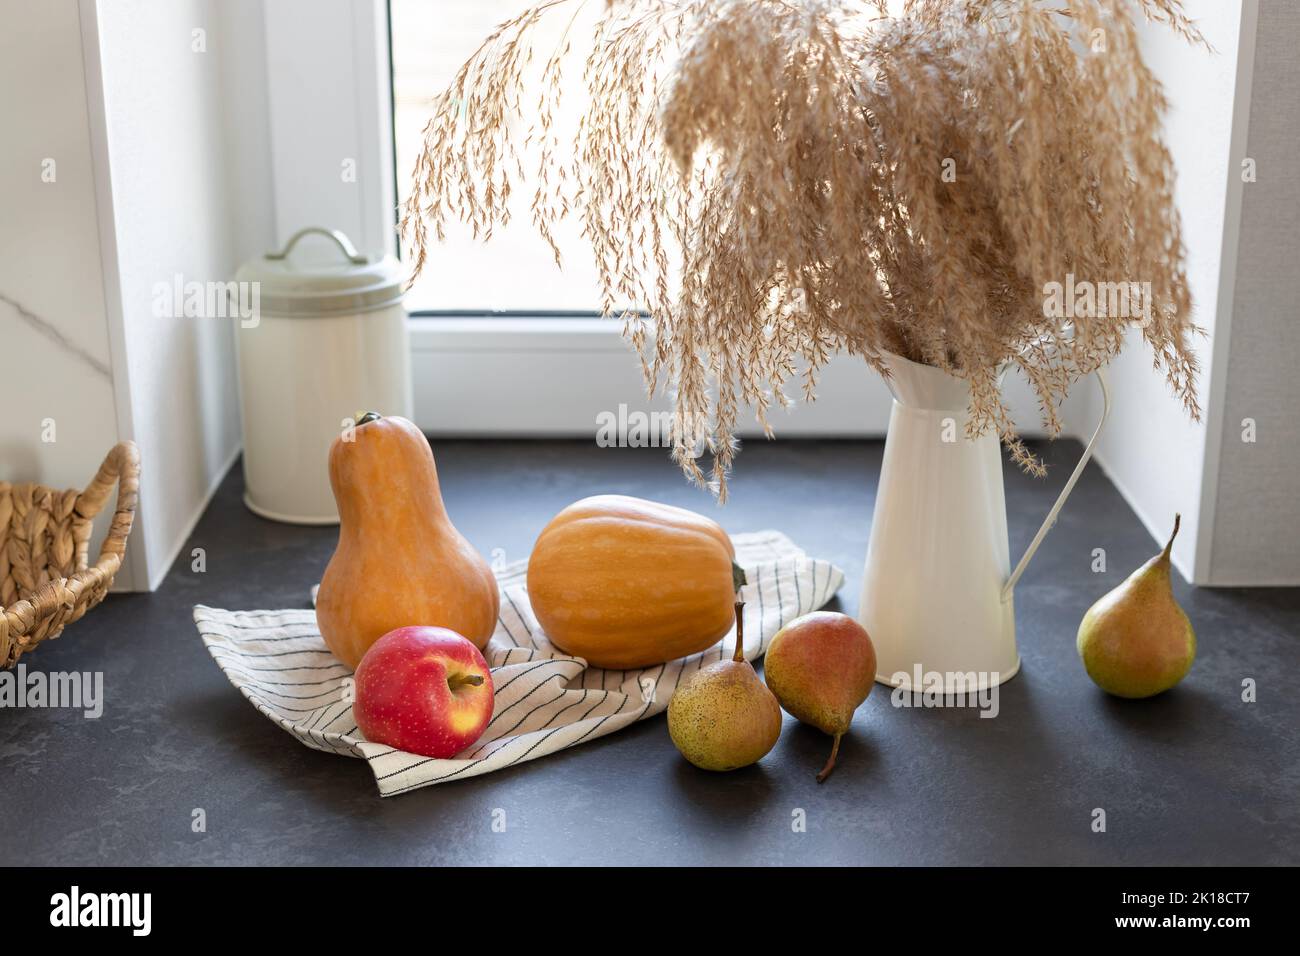 pumpkins, apples, pears. Seasonal ingredients for cooking. Stock Photo